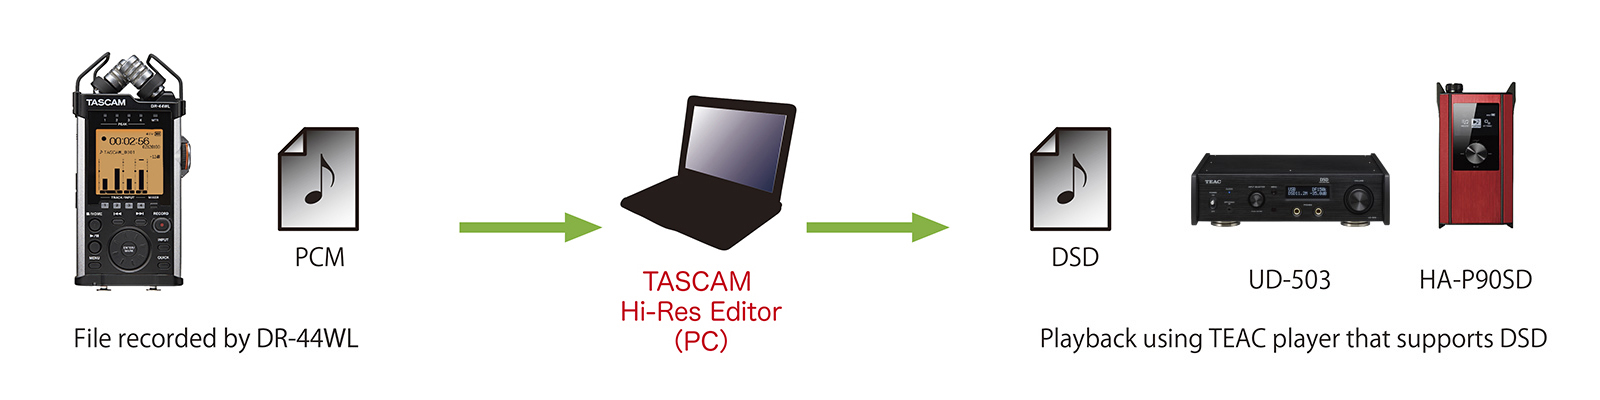 TASCAM Hi-Res Editor